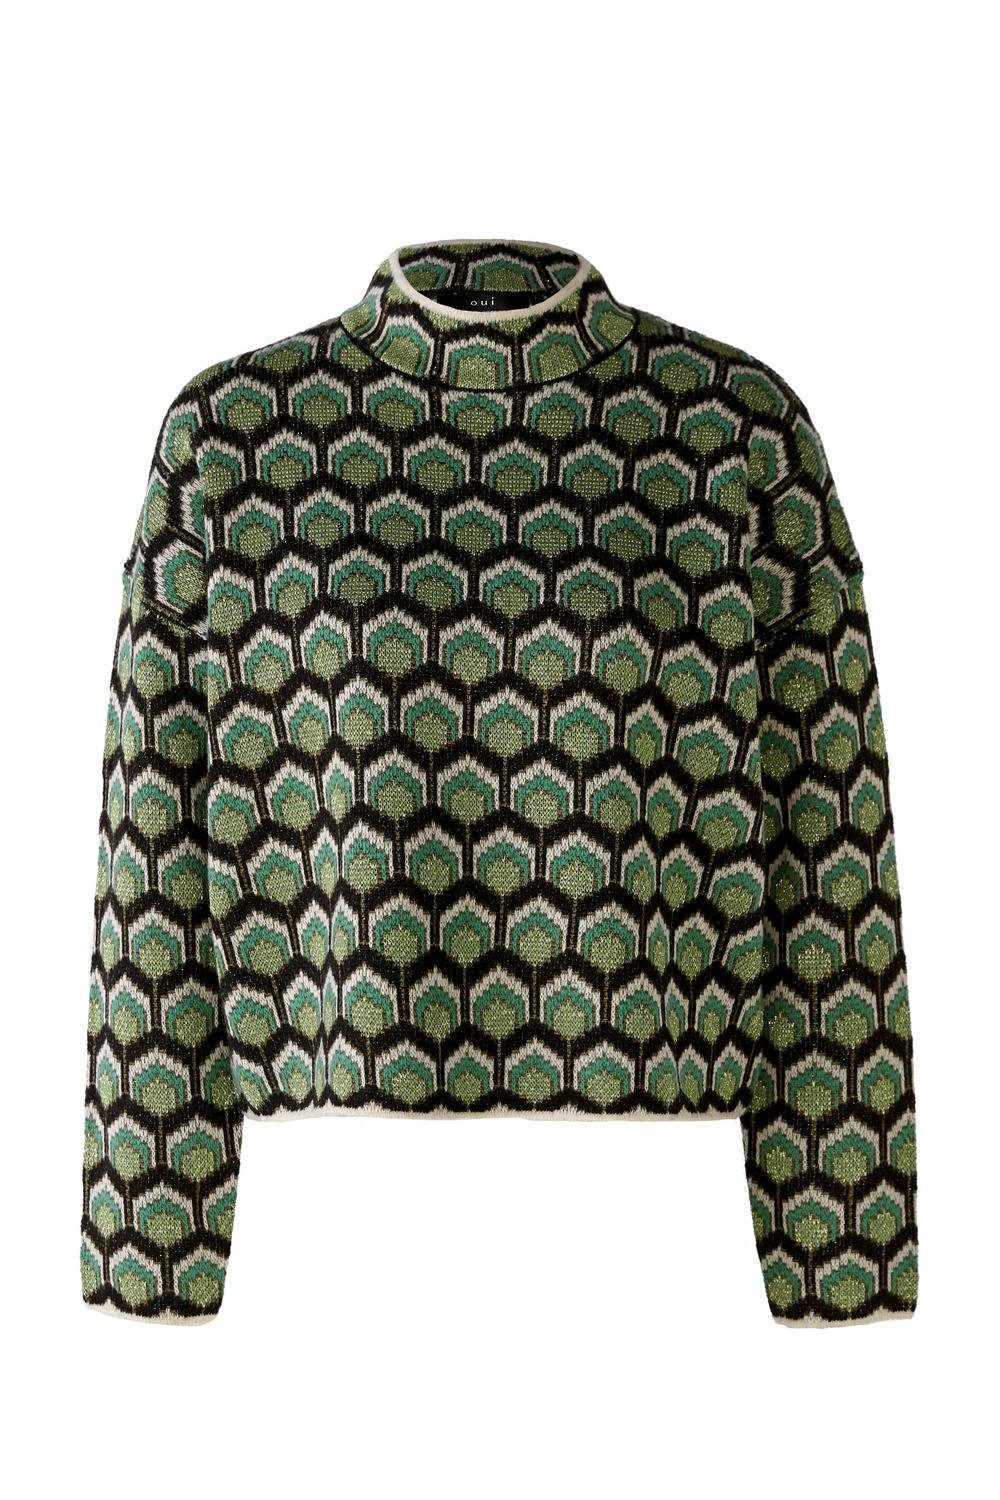 Oui Sweatshirt Pullover, dk green green